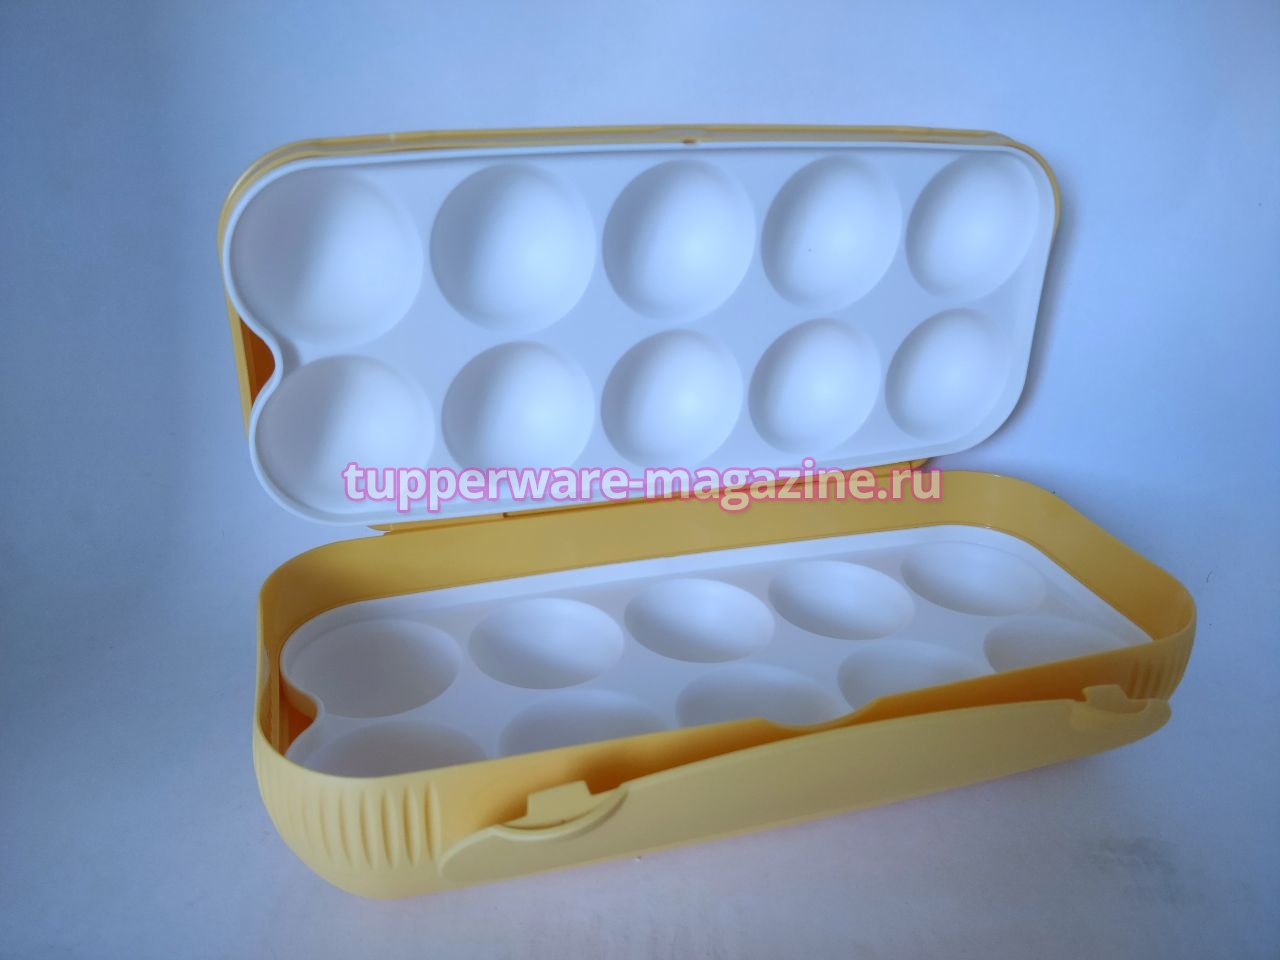 Контейнер для 10 яиц Tupperware в желтом цвете  с цветным рисунком